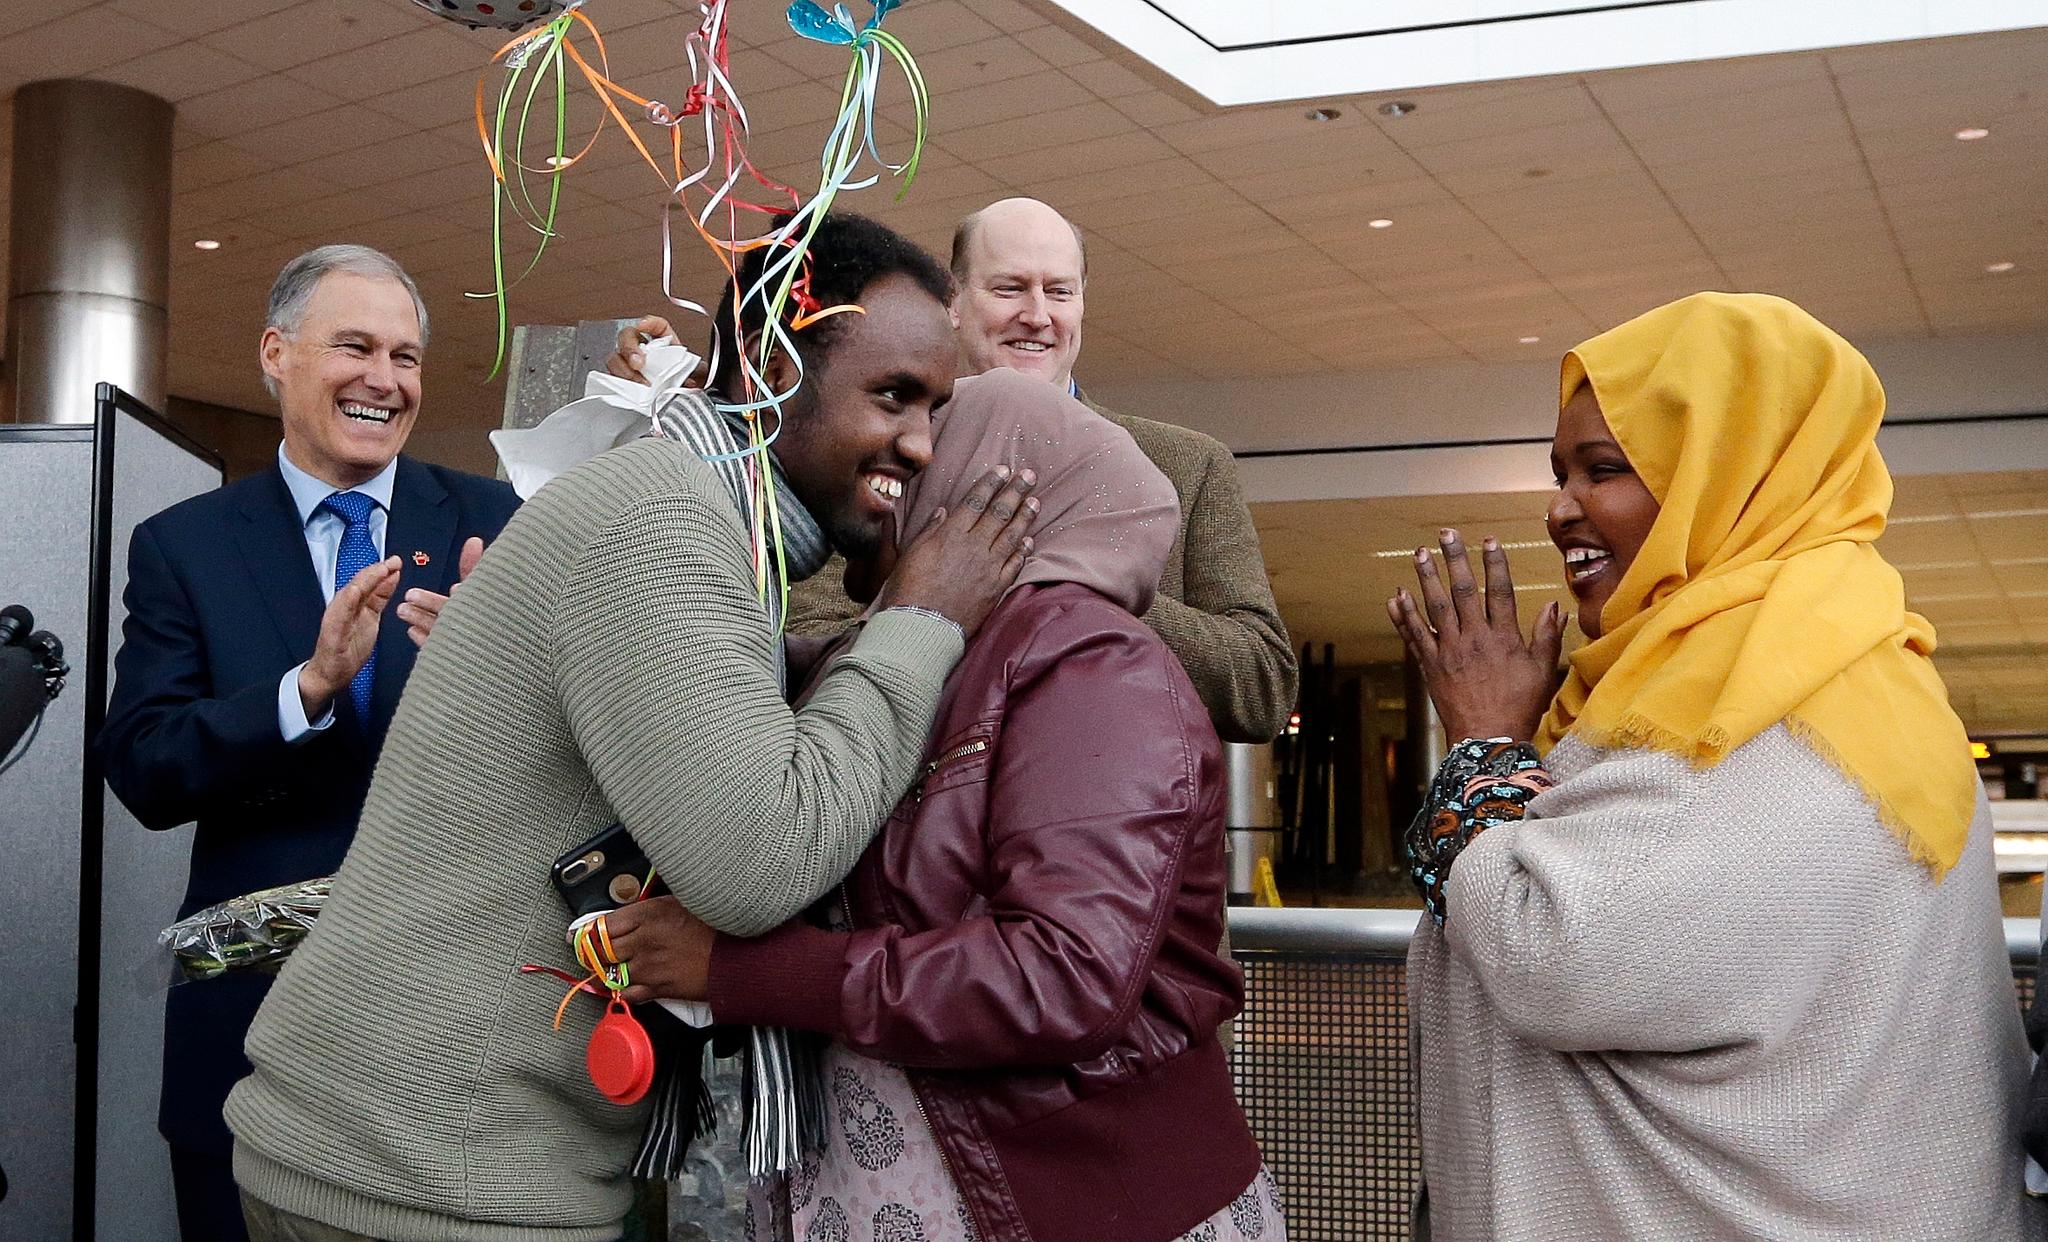 Isahaq Ahmed Rabi, (nr,. 2 f.v.) tas imot familiemedlemmer på Seattle Tacoma International Airport mandag. Rabi ble nektet innreise i forrige uke etter at innreiseforbundet ble iverksatt. Rabi er fra Somalia, men hans kone er amerikansk statsborger.  Bak applauderer representanter for delstatsmyndighetene i Washington, som fikk midlertidig stoppet innreiseforbudet.